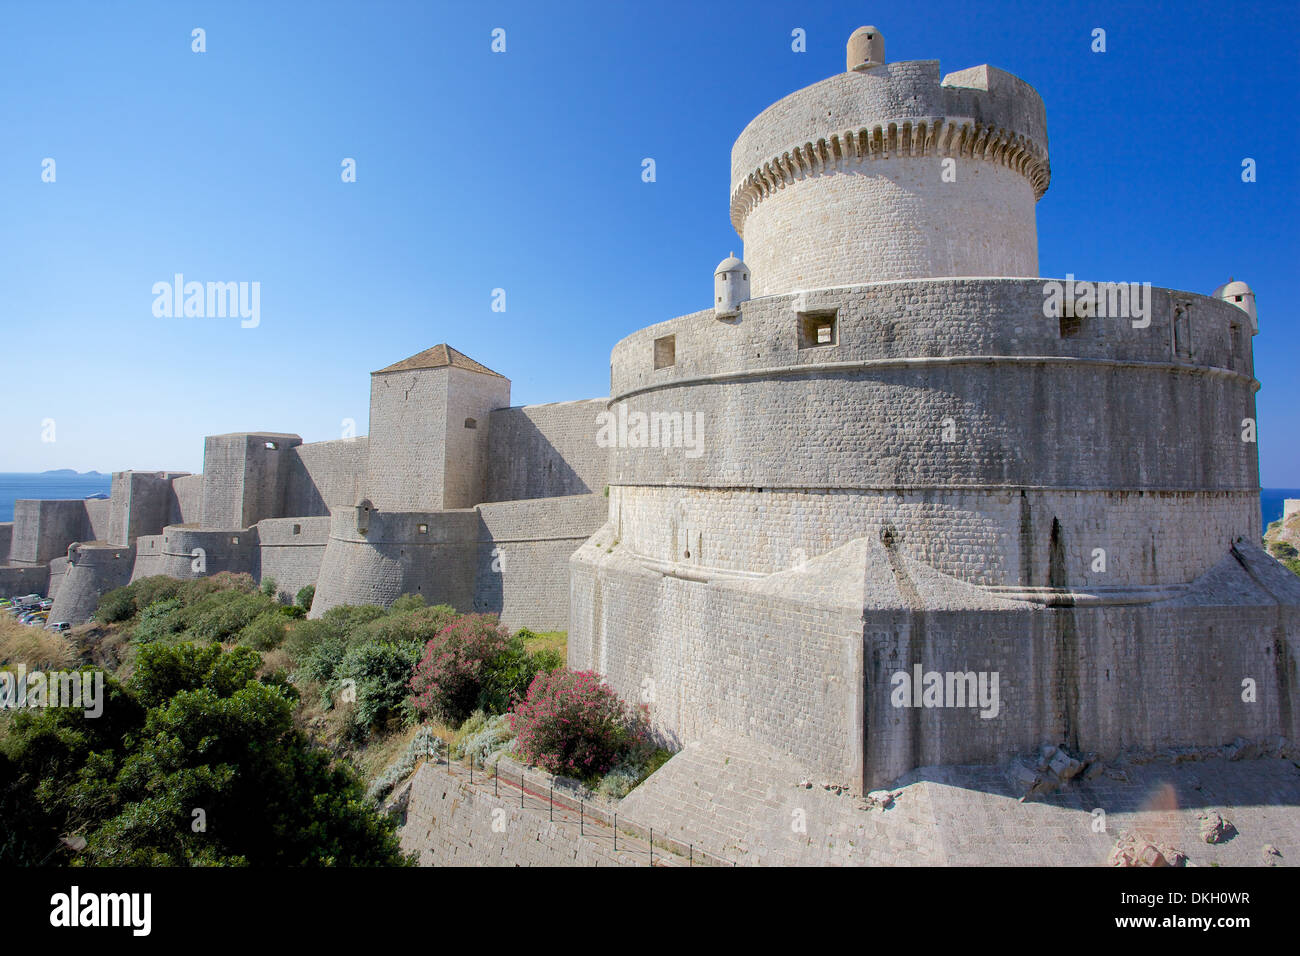 Fort Minceta e alle mura della vecchia città, patrimonio mondiale dell UNESCO, Dubrovnik, Dalmazia, Croazia, Europa Foto Stock